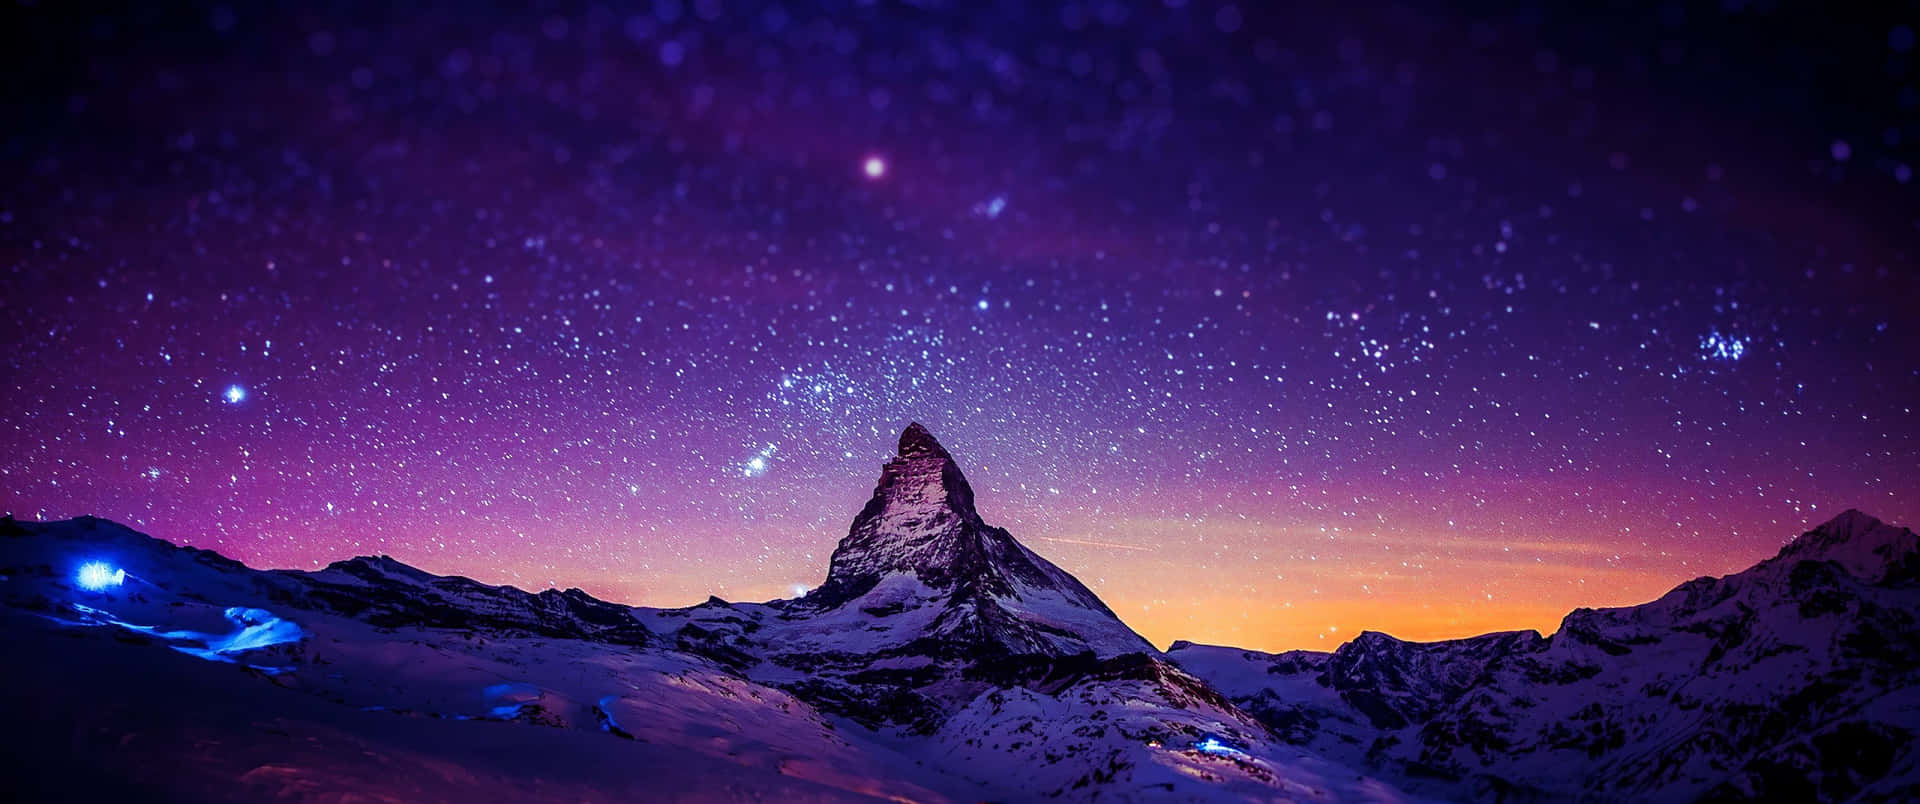 3440x1440p Snowy Matterhorn Mountain Background